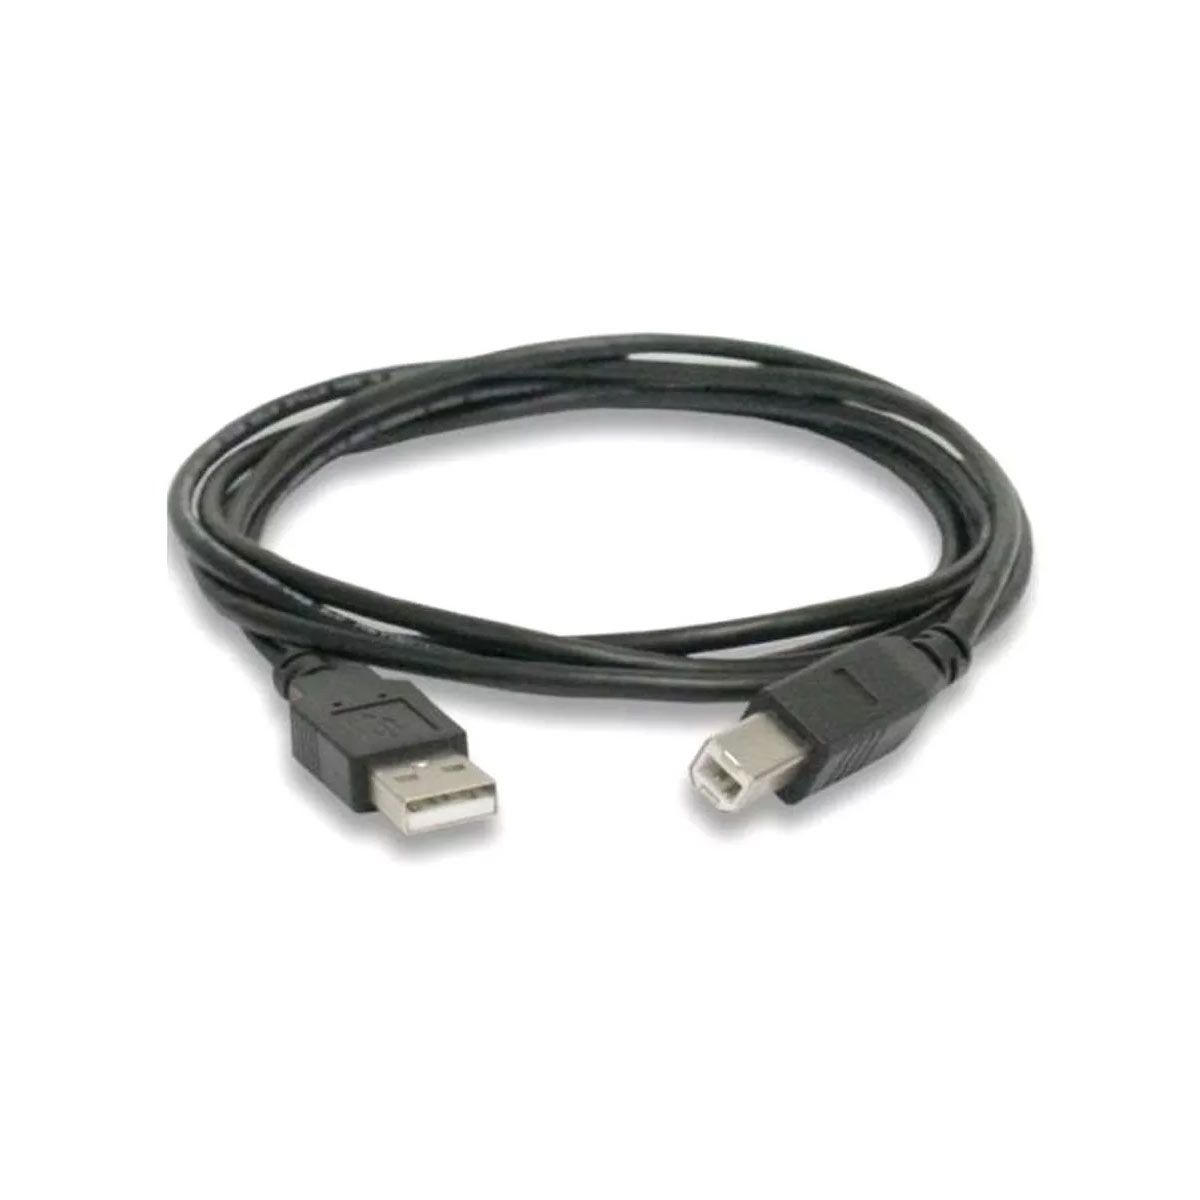 Cabo USB A - B Compatível com Arduino Uno / Mega / Impressora / Scanner - 1,5 metros